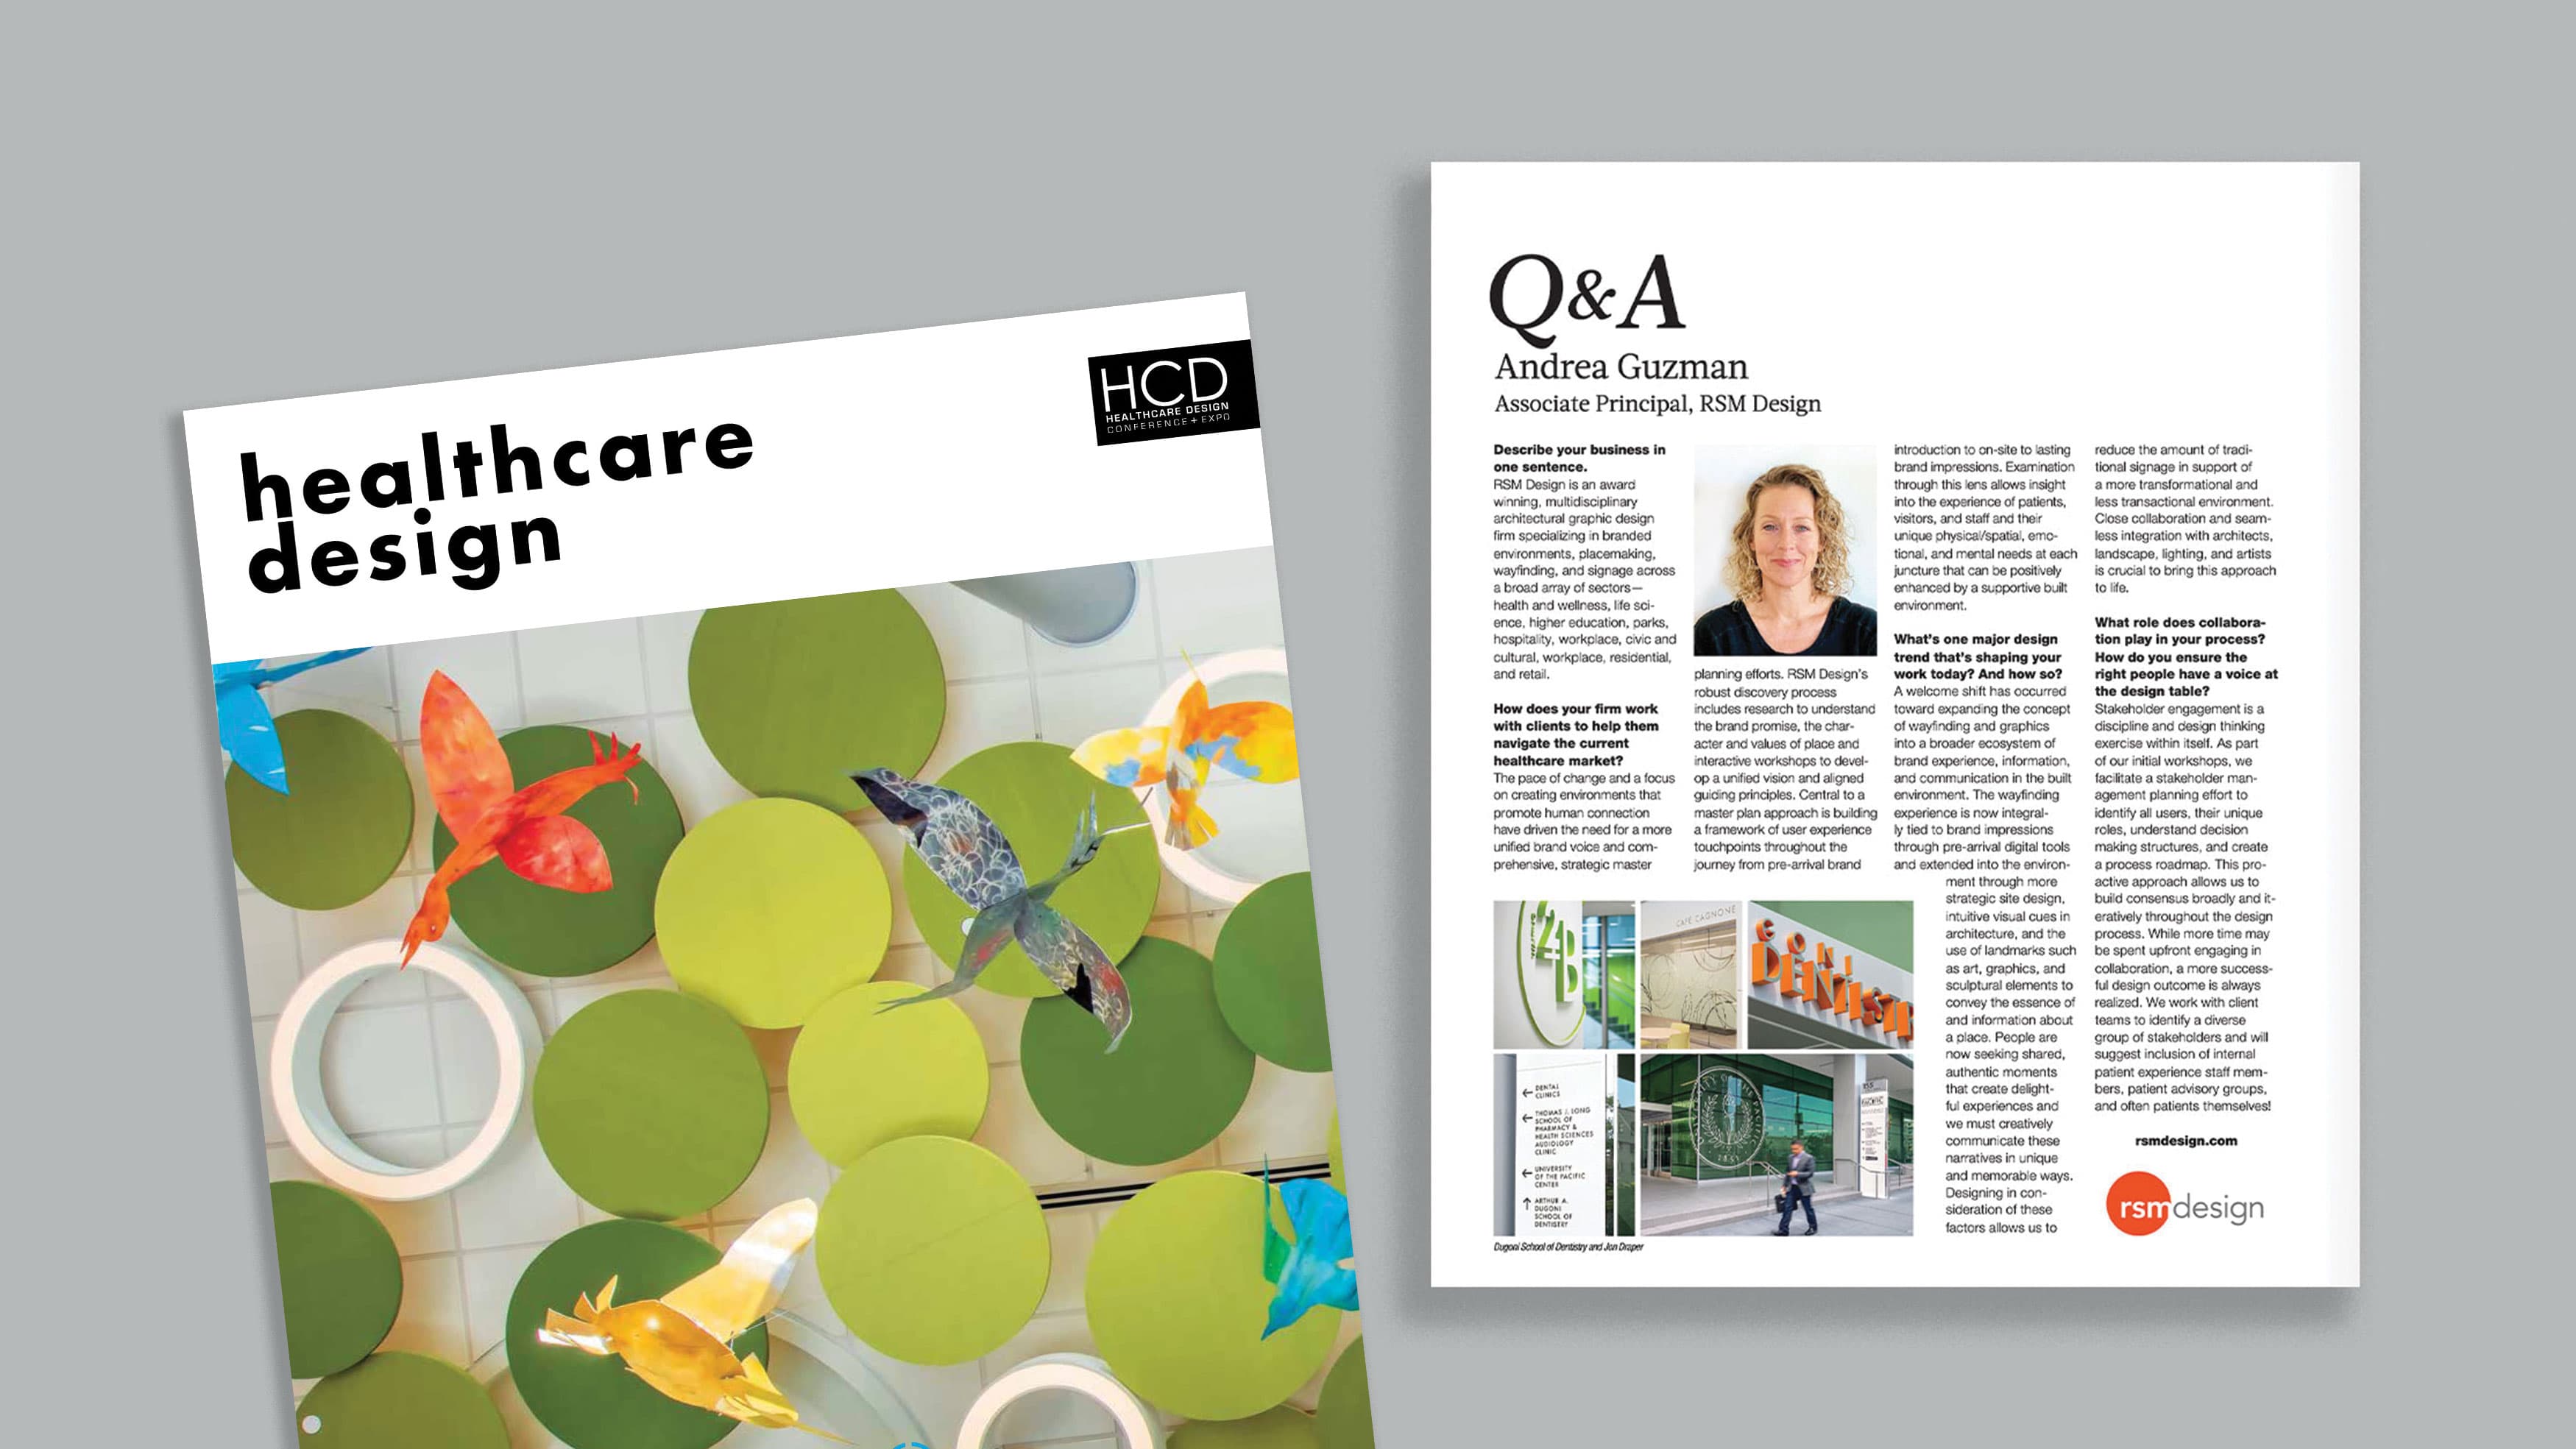 Mockup of Healthcare Design Magazine with Andrea Guzman feature.